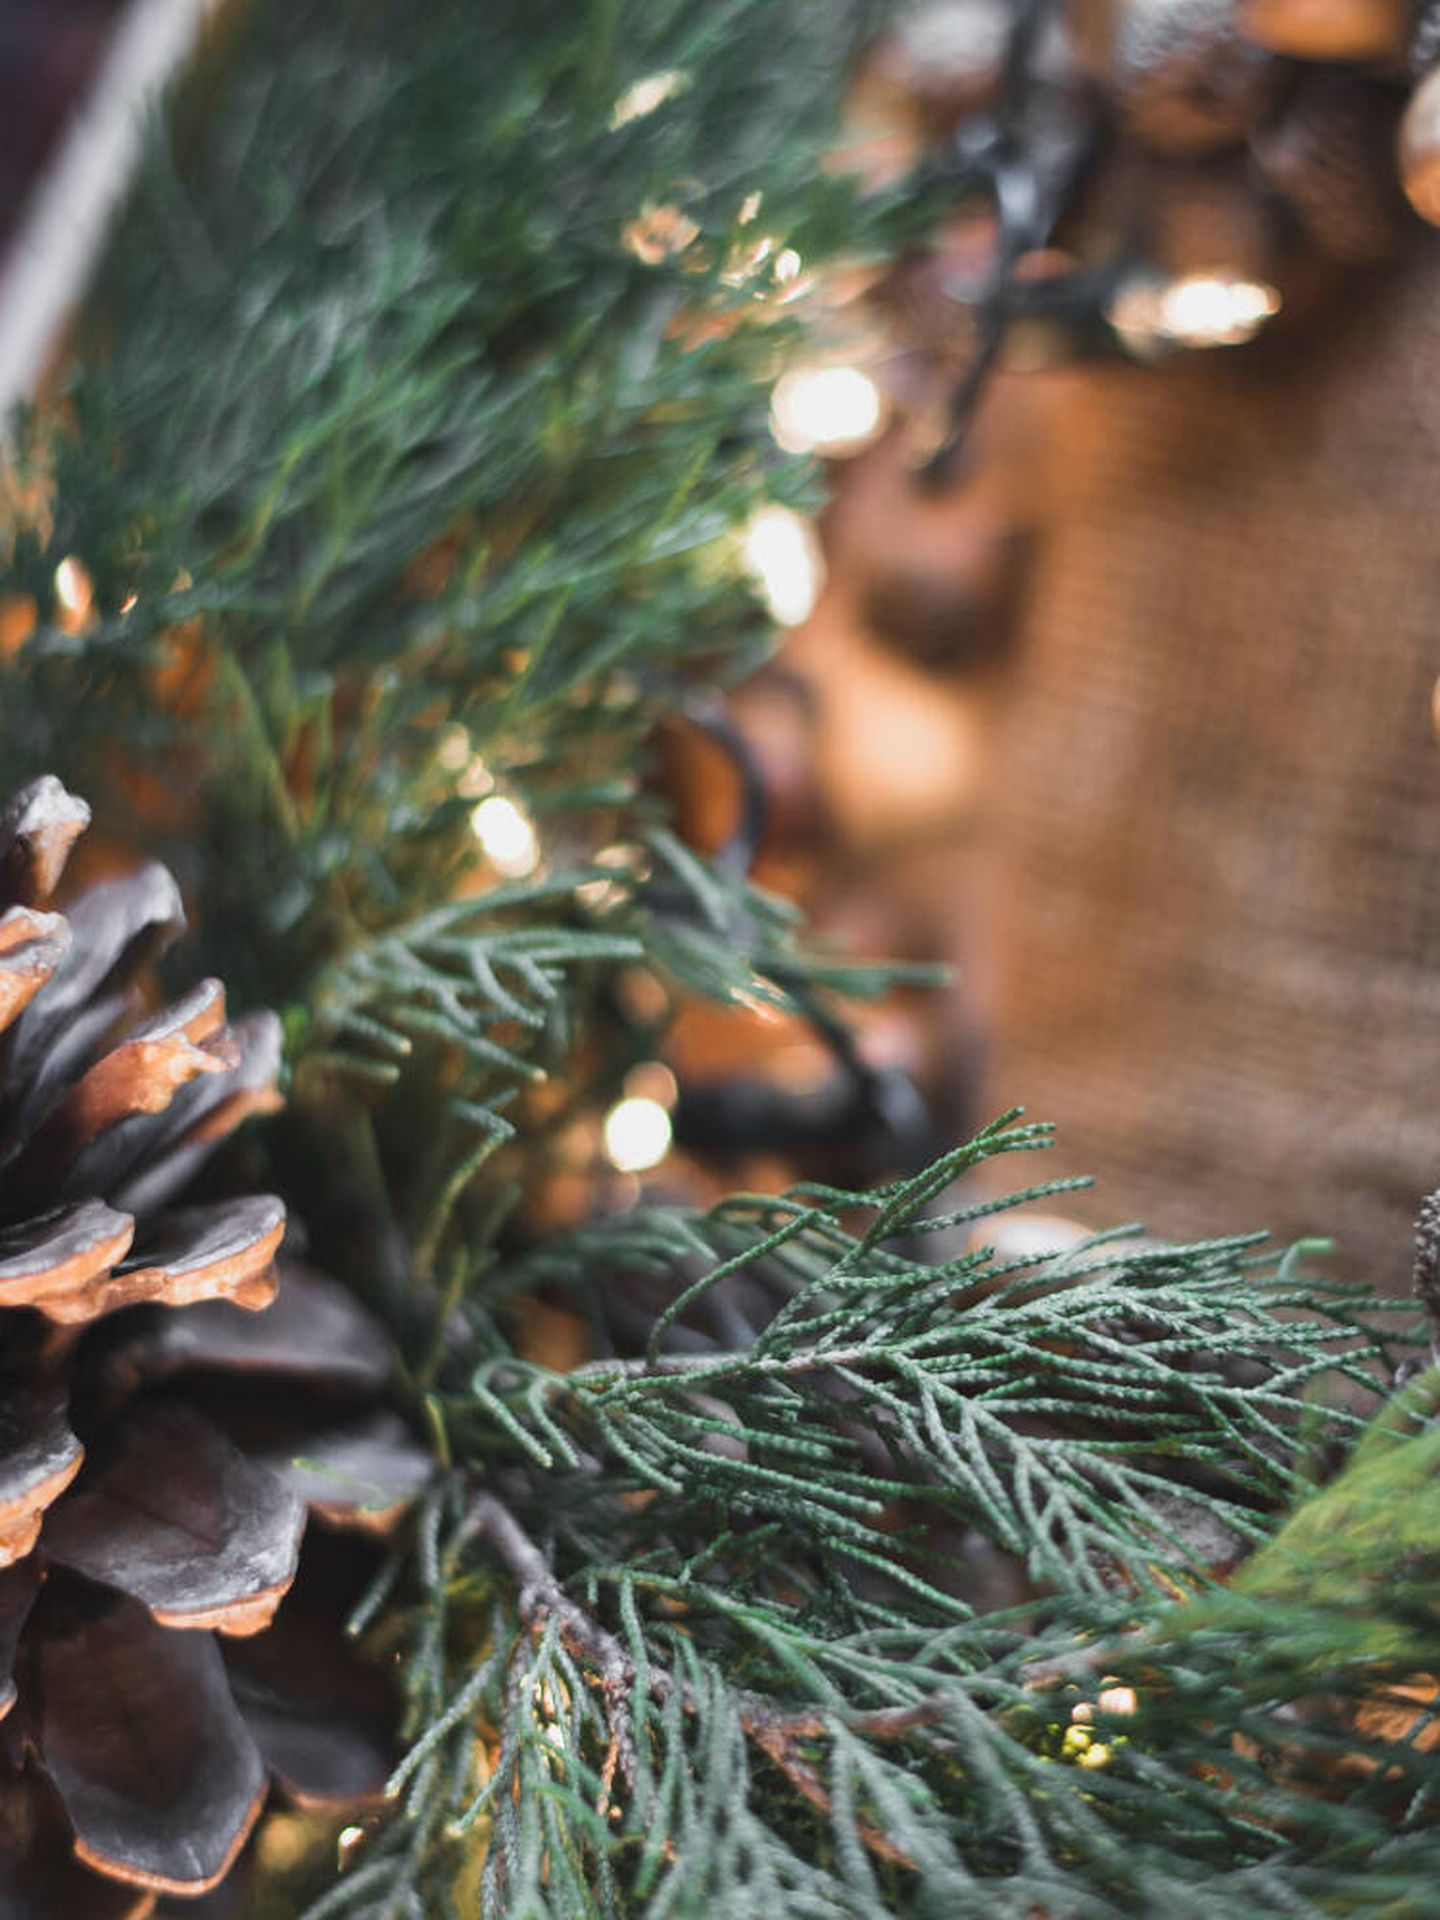 Los elementos rústicos mezclados con otros detalles chic son una perfecta mezcla de estilo para decorar en Navidad. (Freepik)